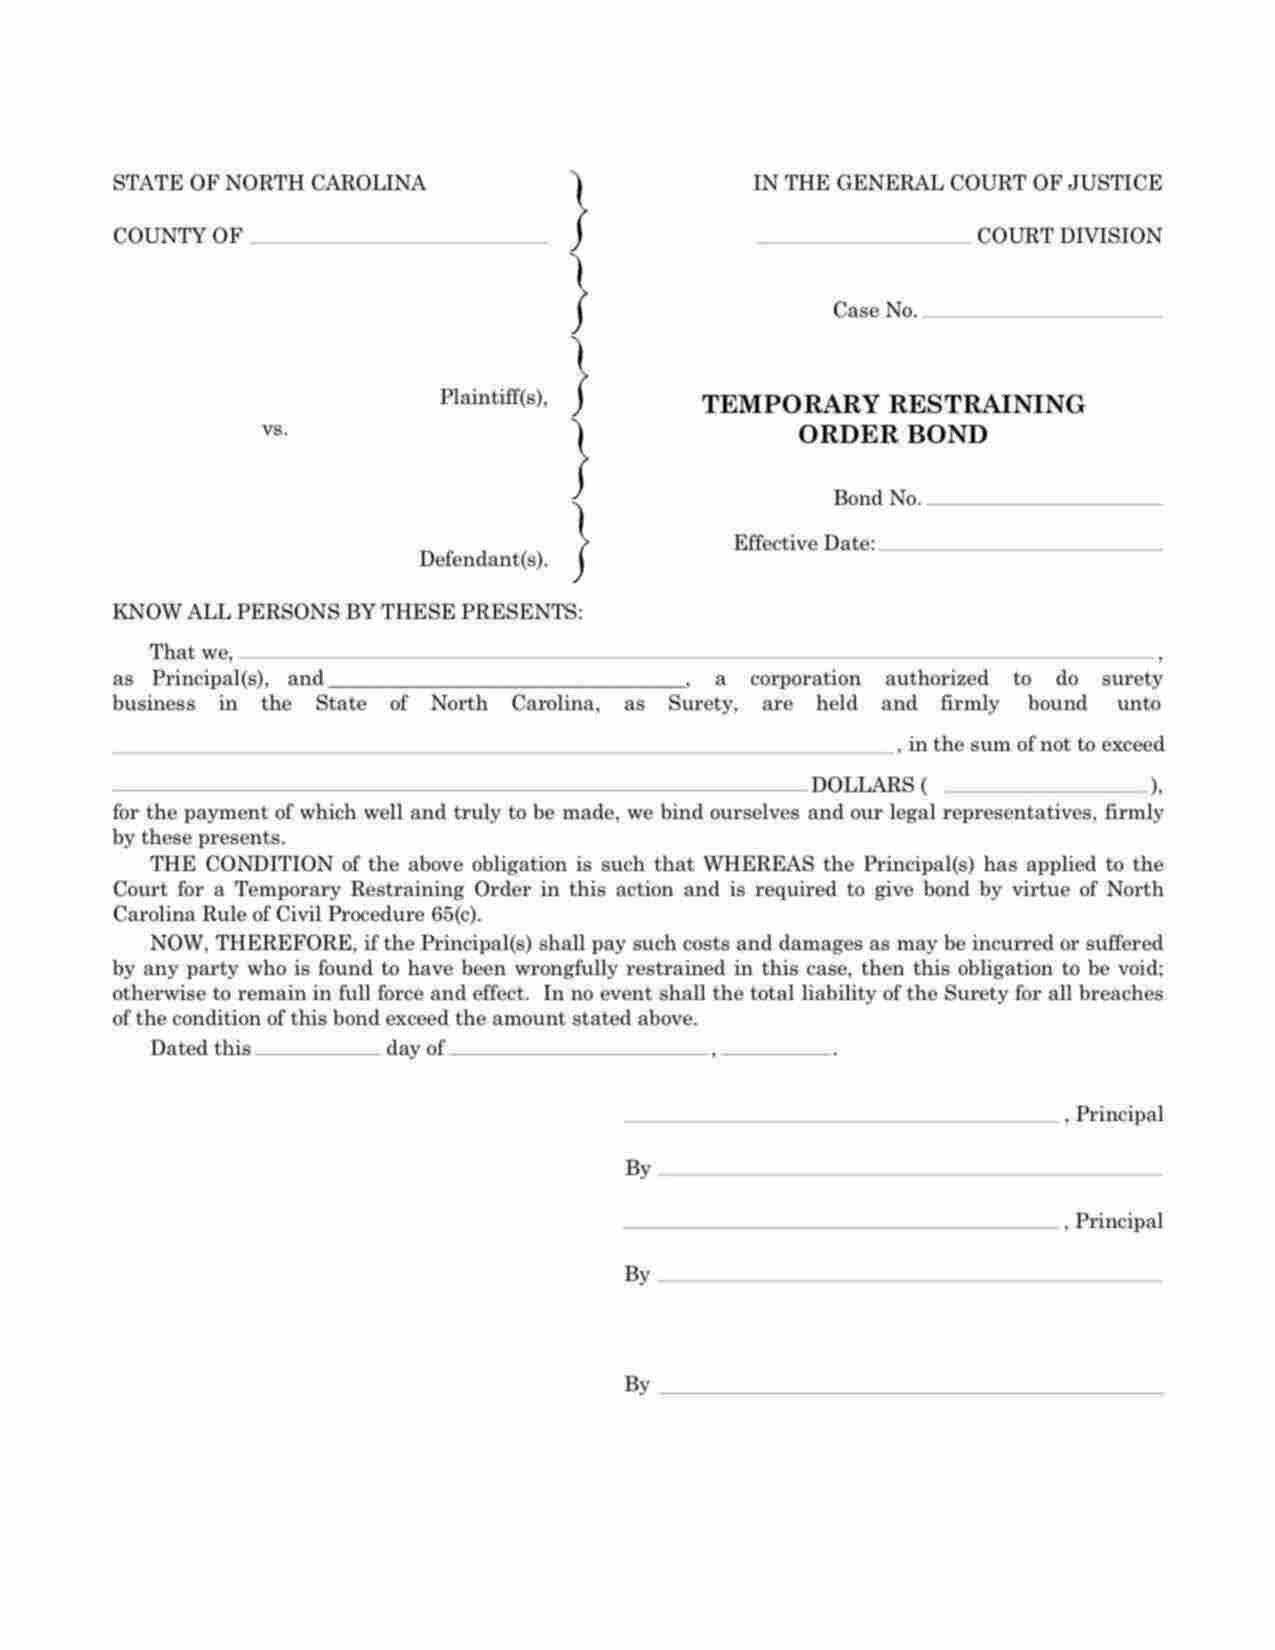 North Carolina Temporary Restraining Order Bond Form